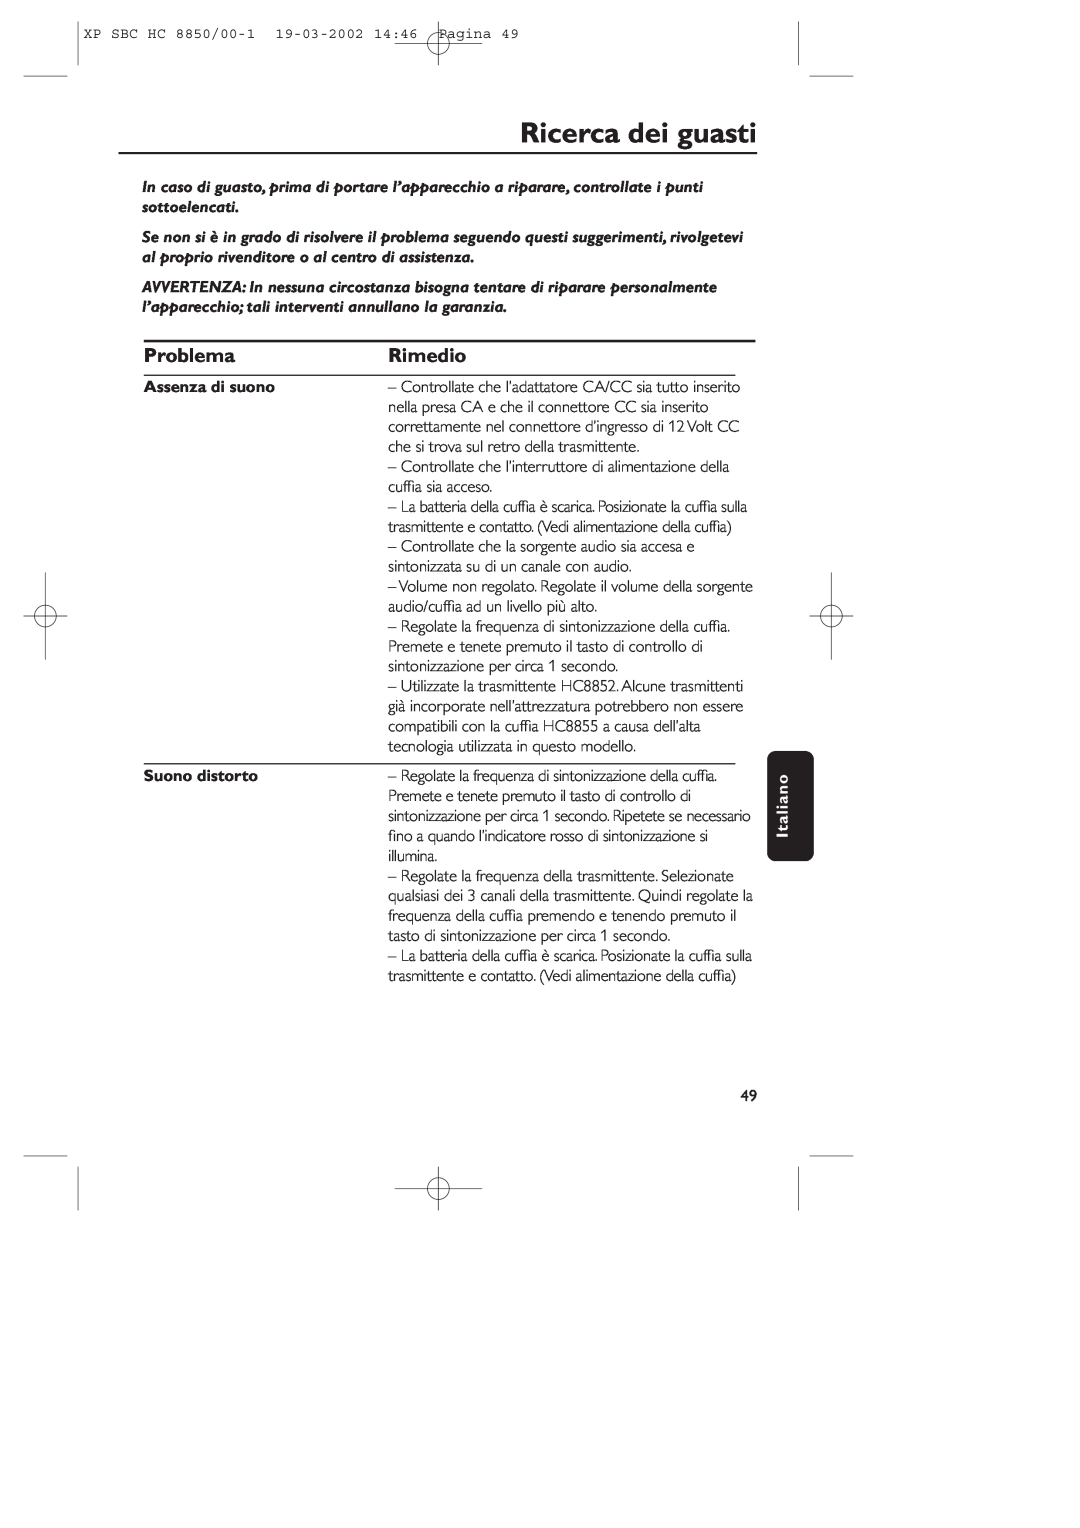 Philips HC8850 manual Ricerca dei guasti, Problema, Rimedio, Assenza di suono, Suono distorto, Italiano 